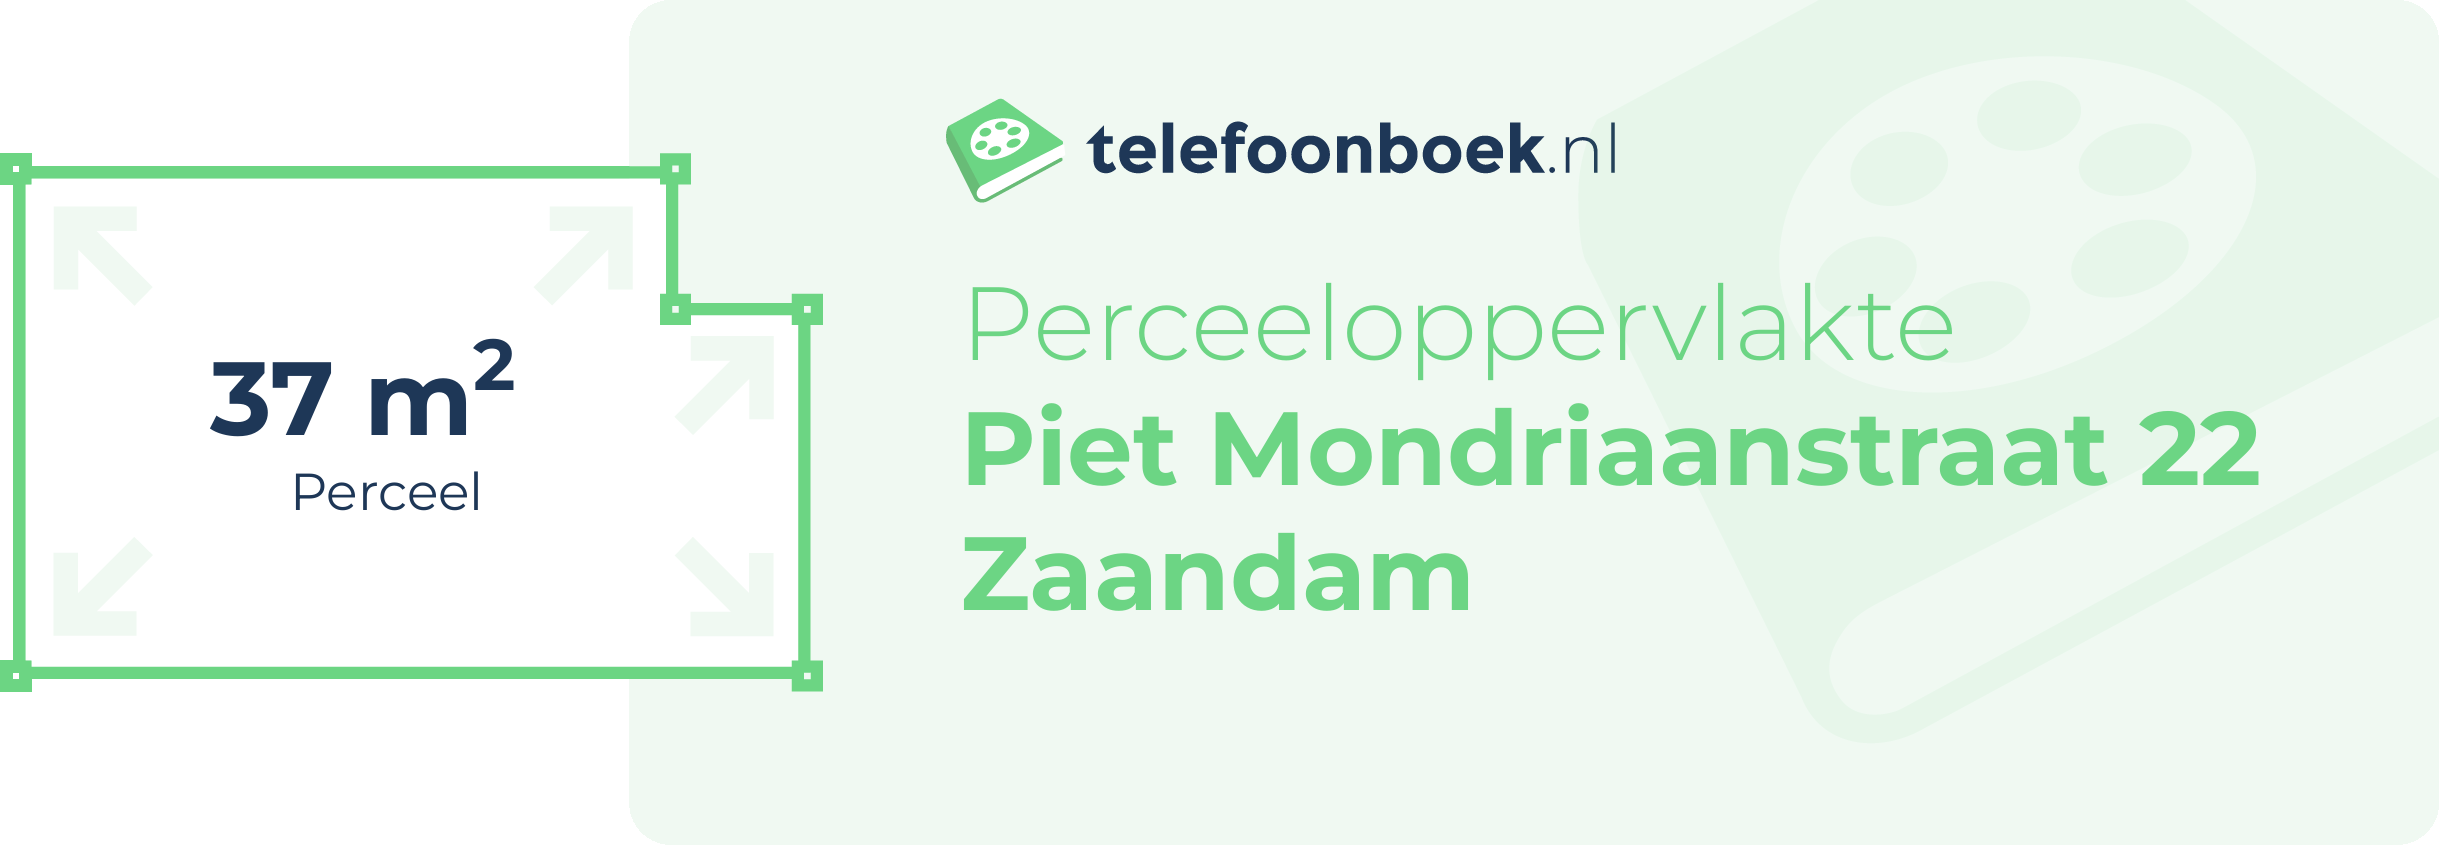 Perceeloppervlakte Piet Mondriaanstraat 22 Zaandam